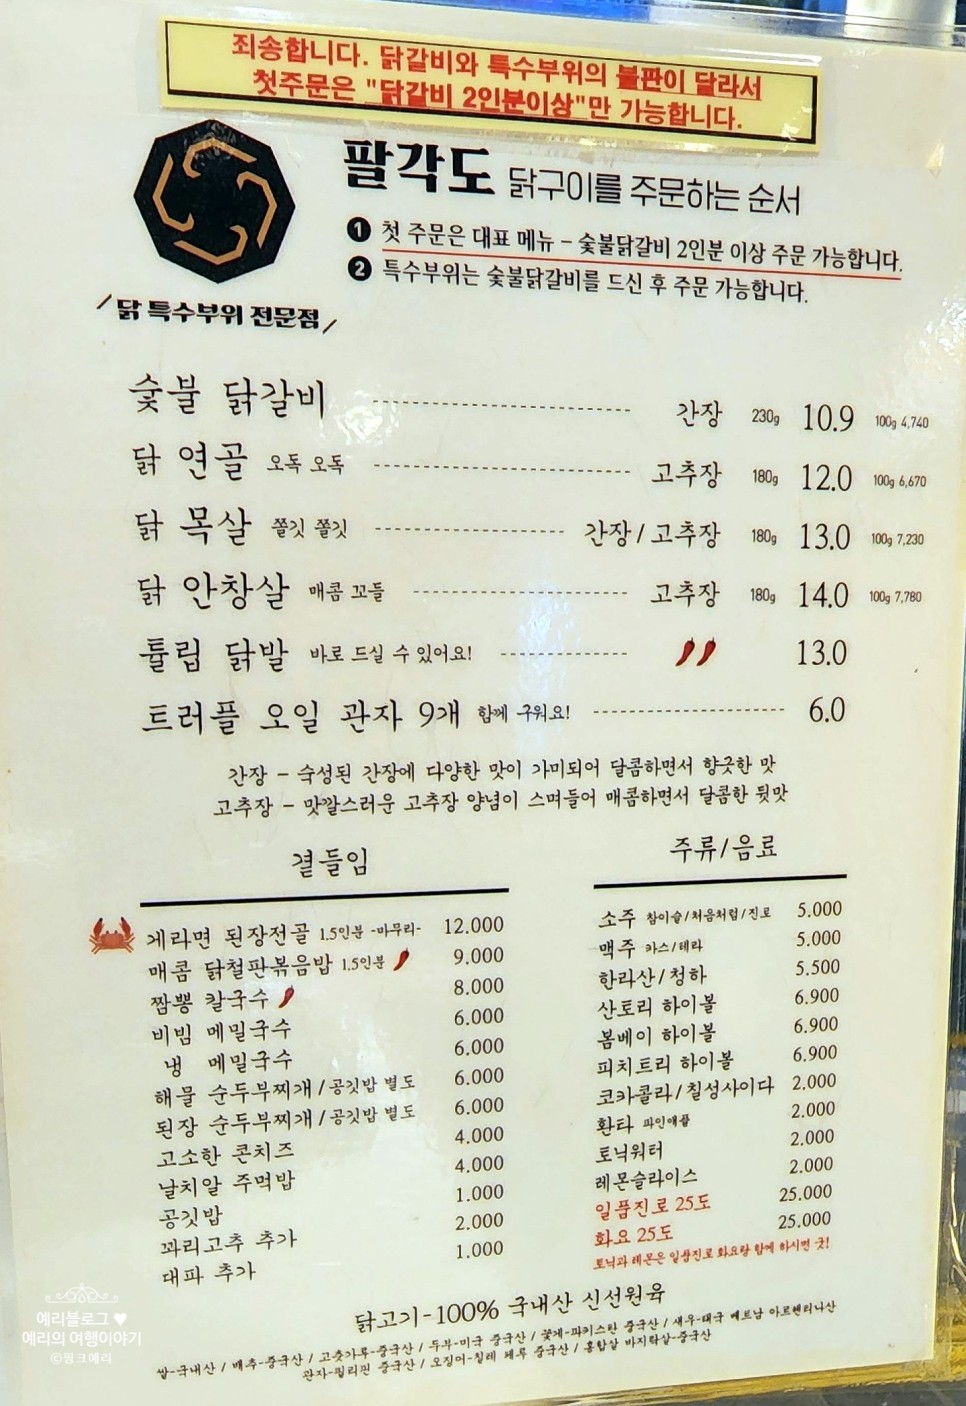 동탄 북광장 맛집 팔각도 쫄깃하고 맛있는 숯불 닭갈비